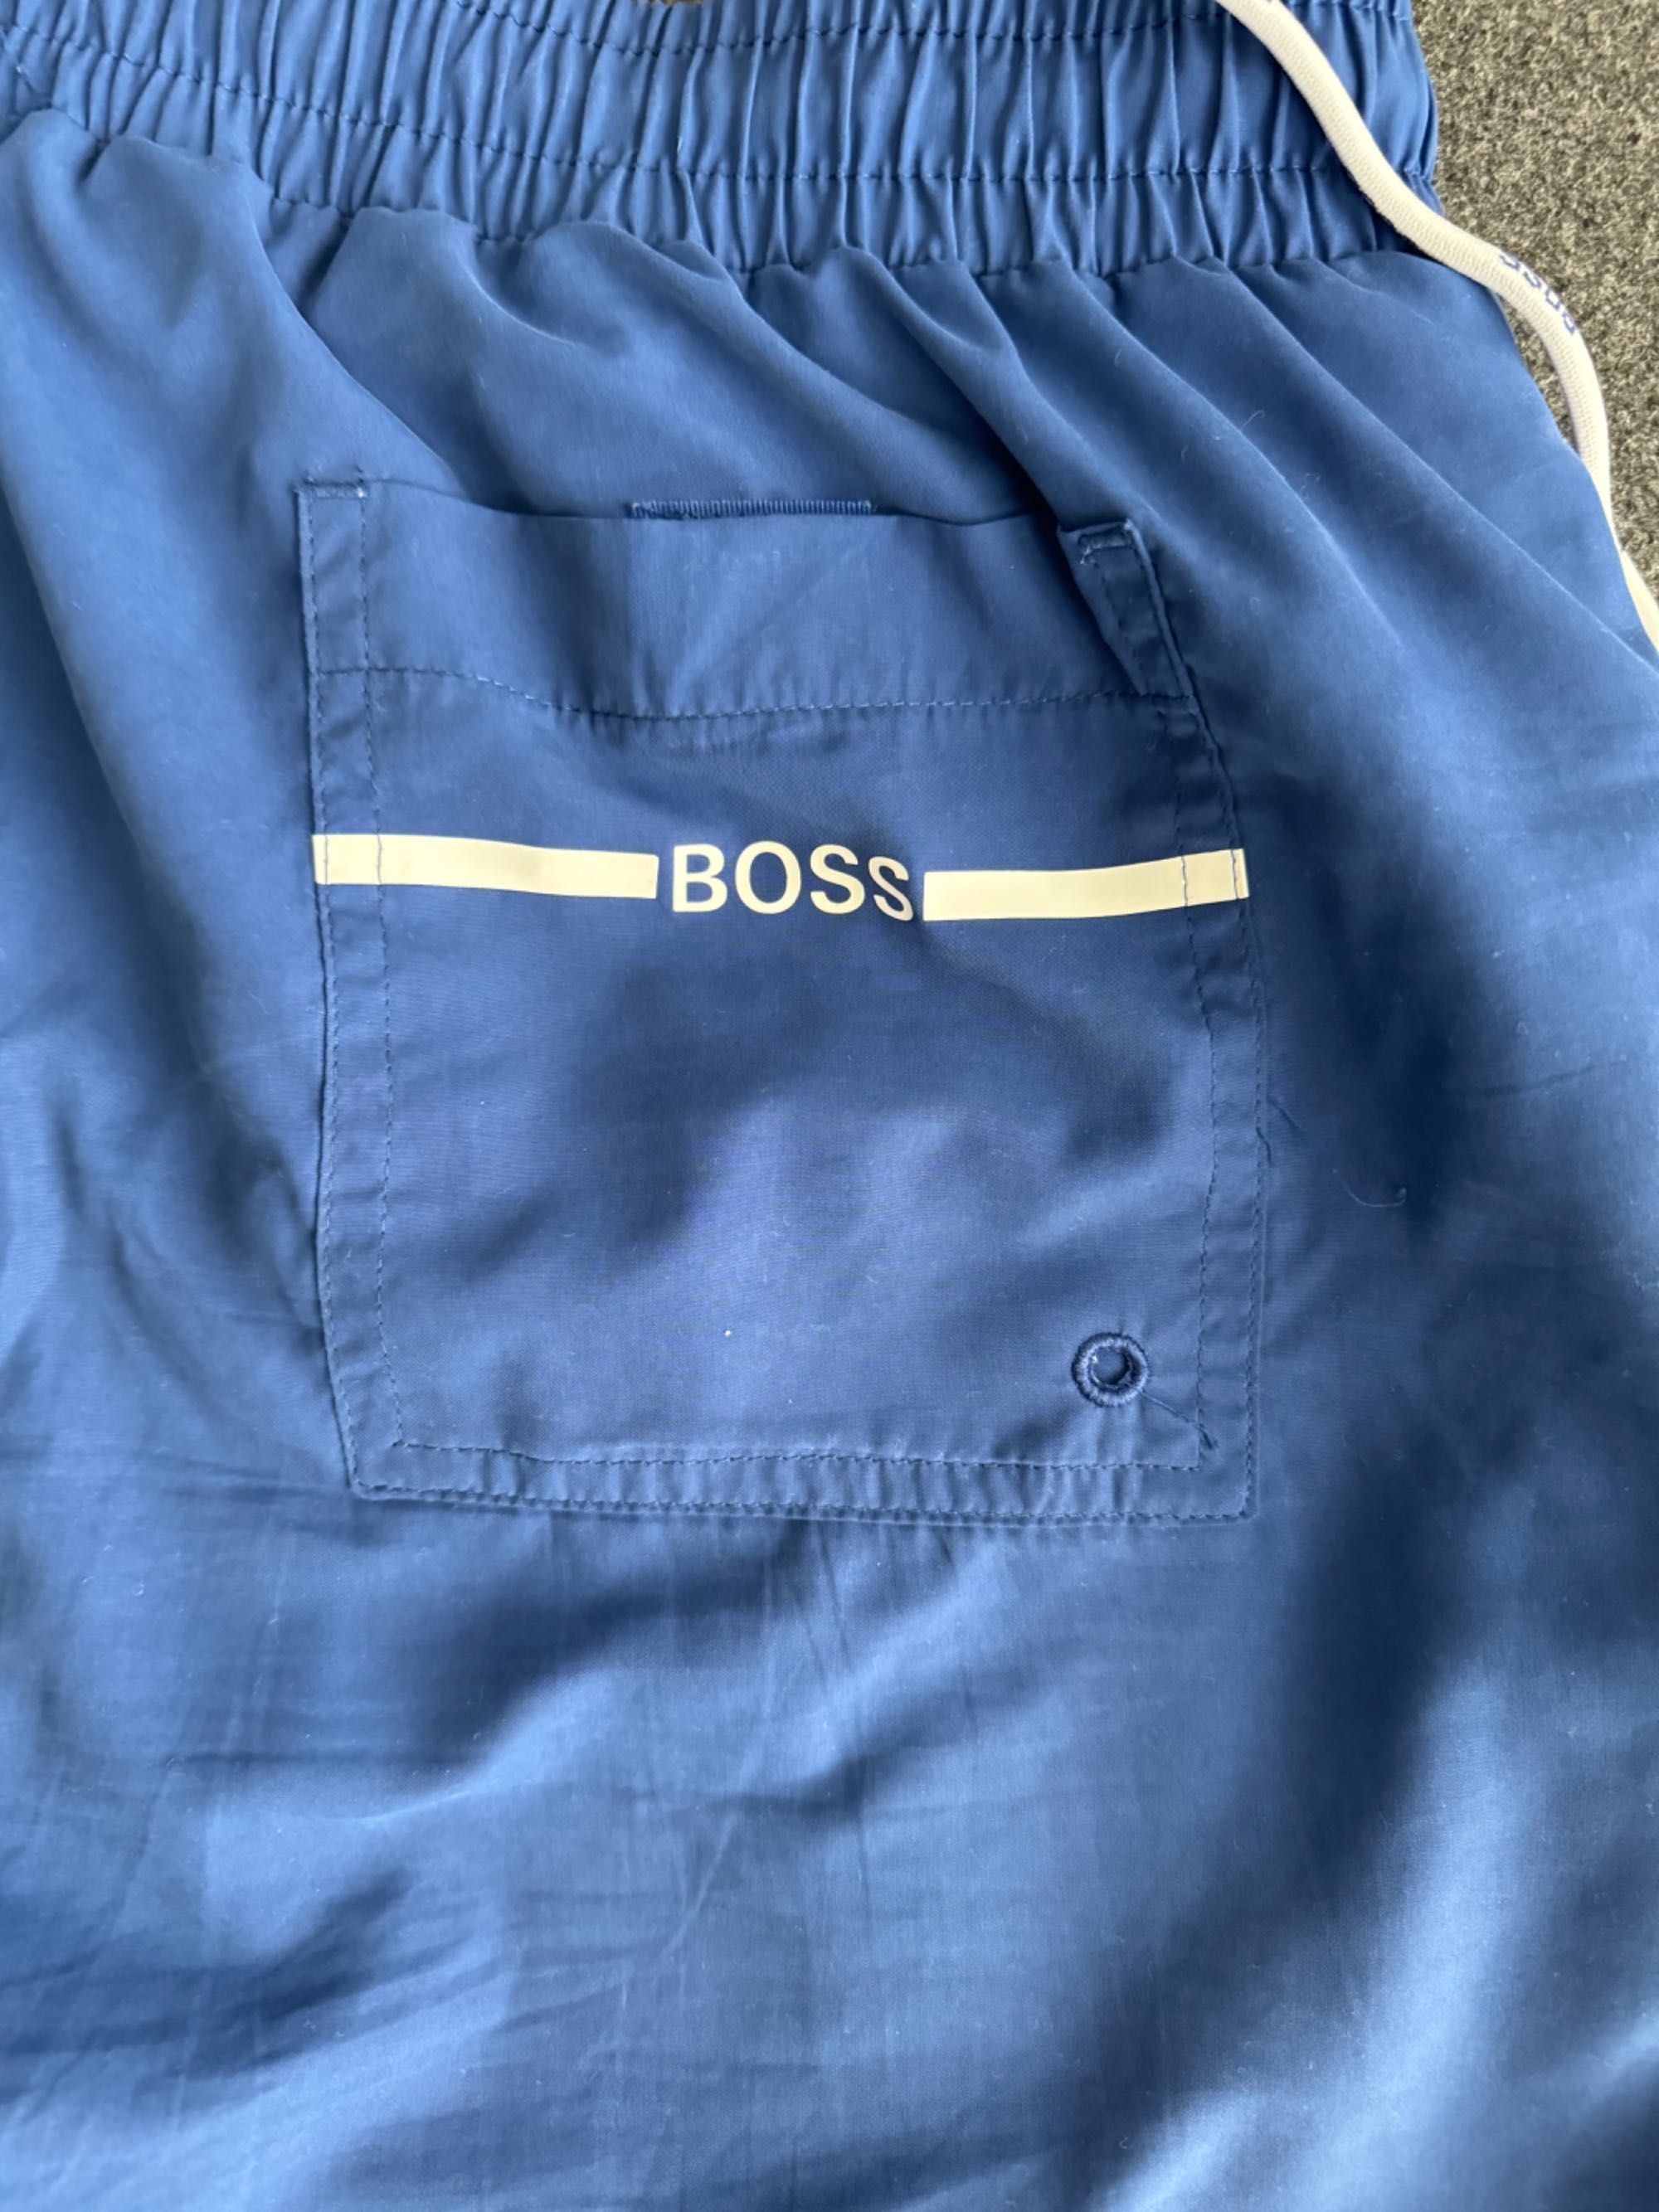 Niebieskie szorty Hugo Boss.